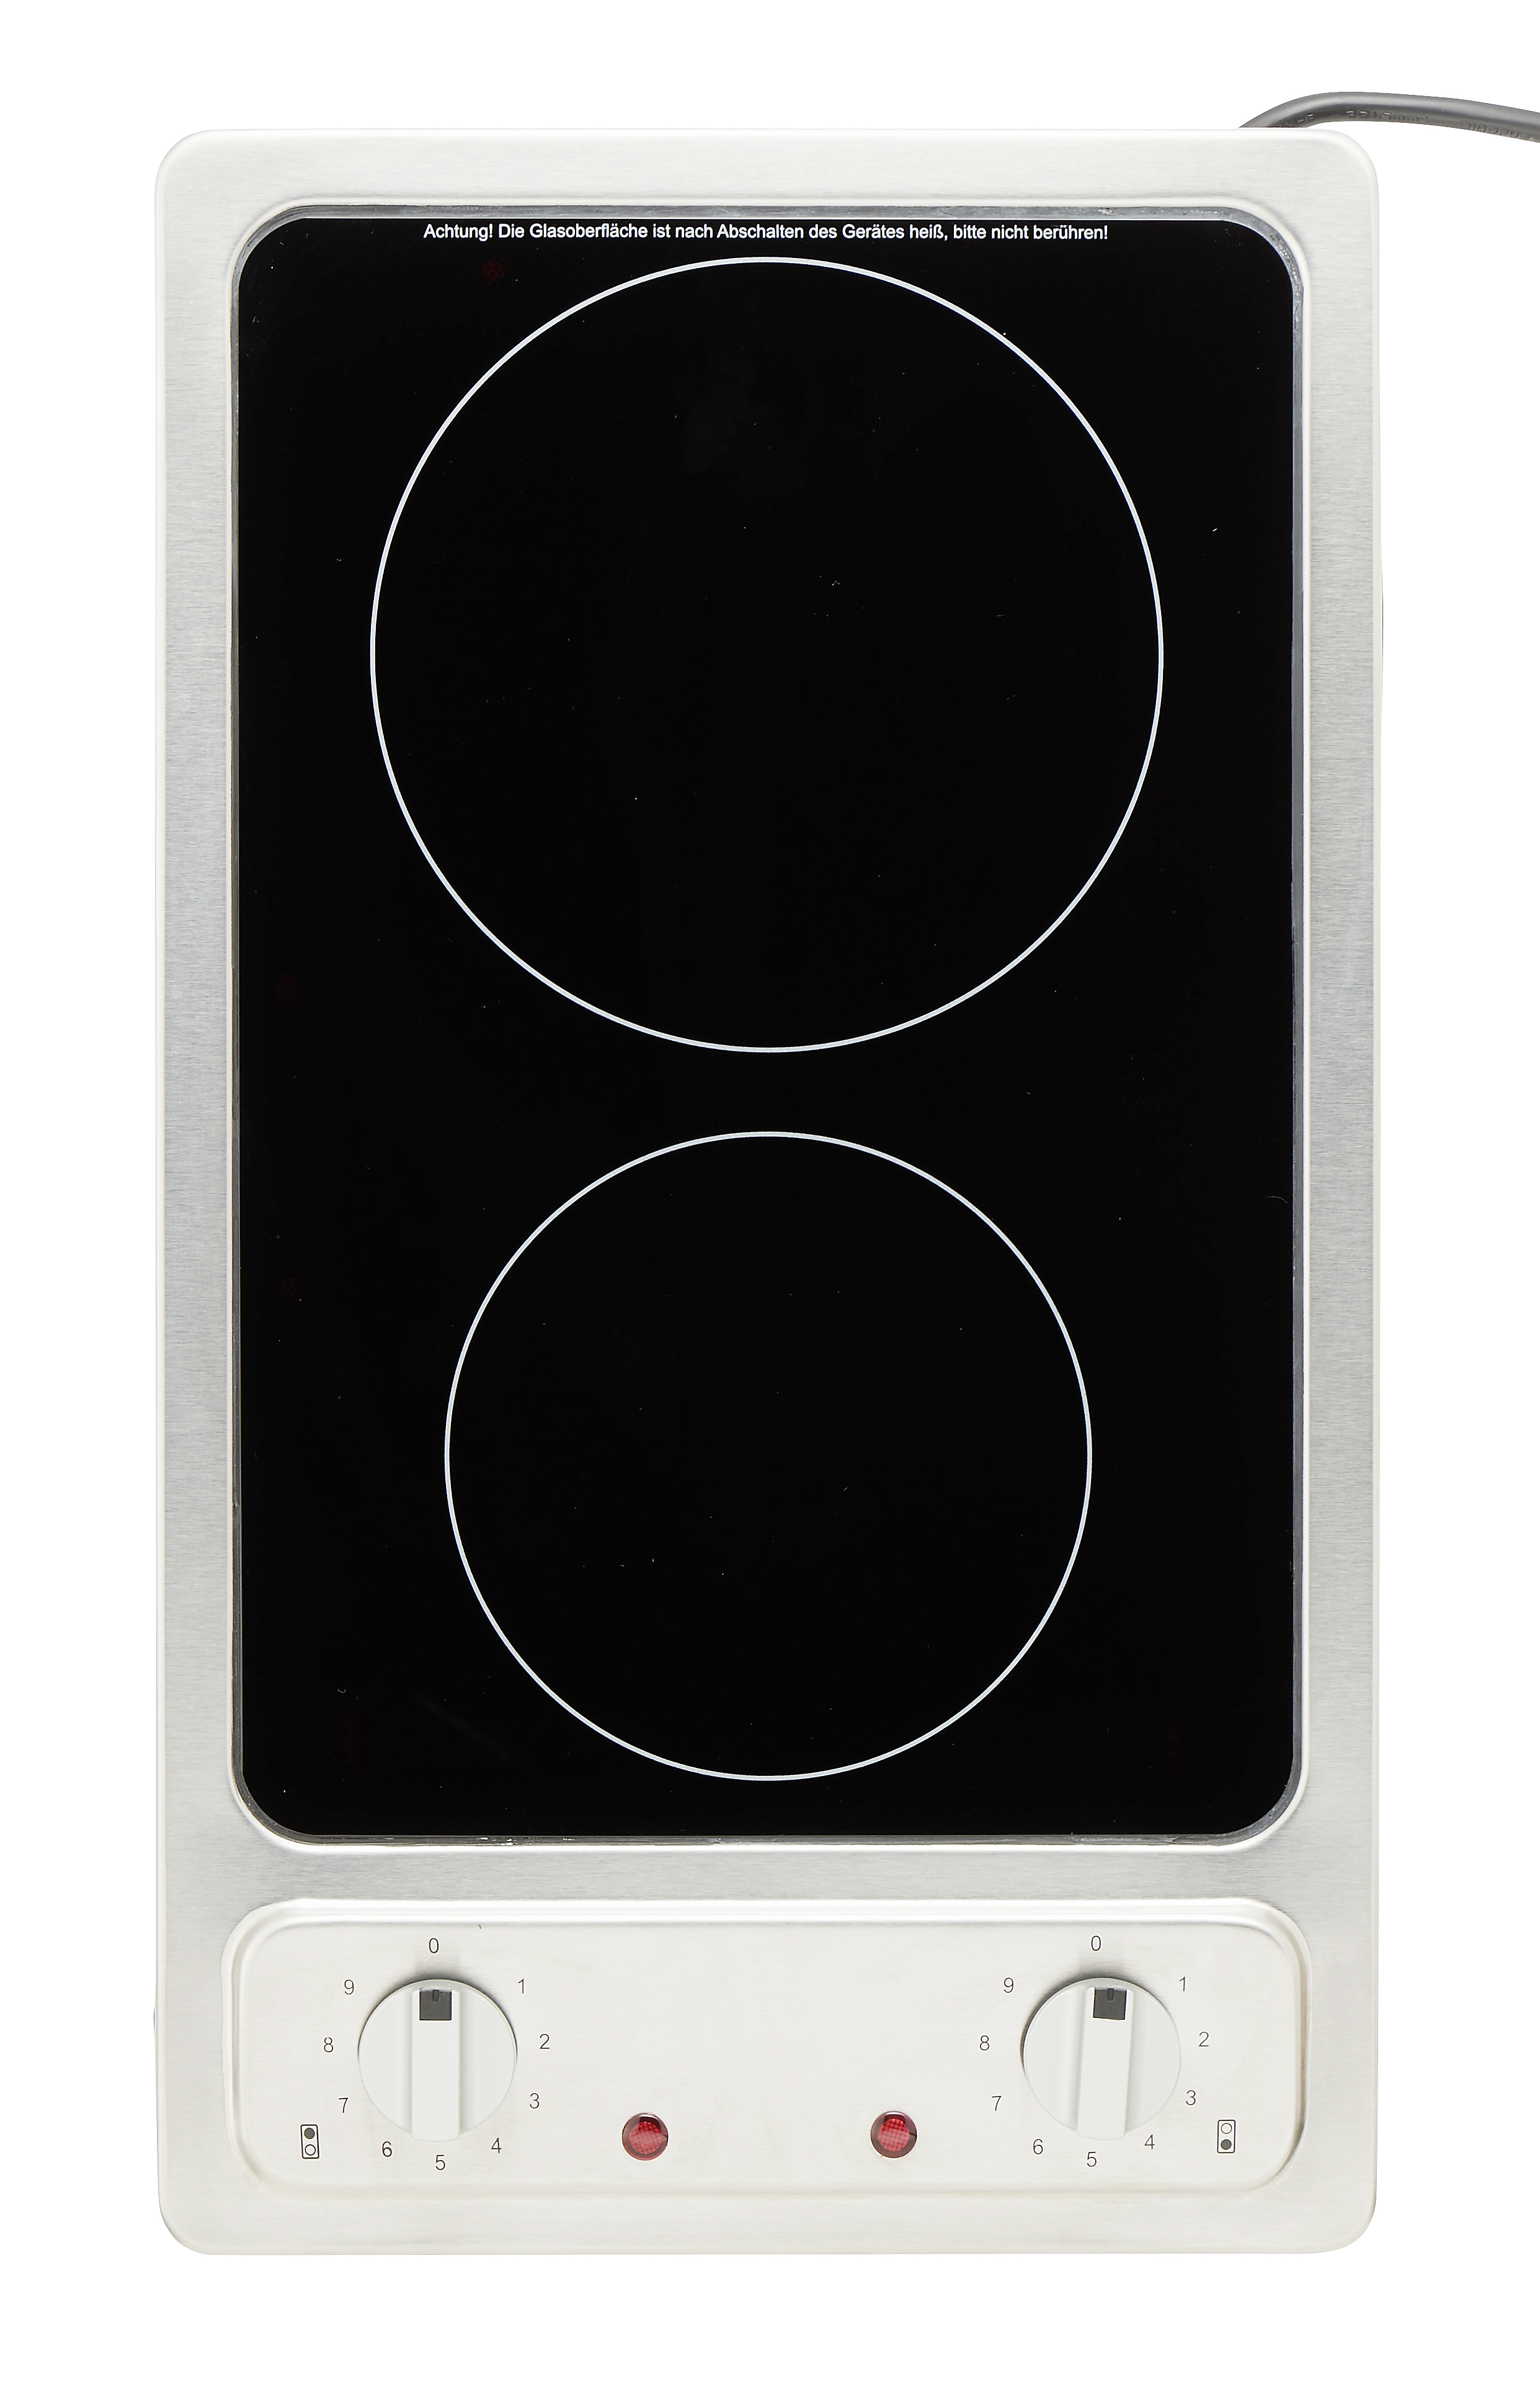 Singleküche mit E-Geräten - 210 cm breit - Buche – Namu